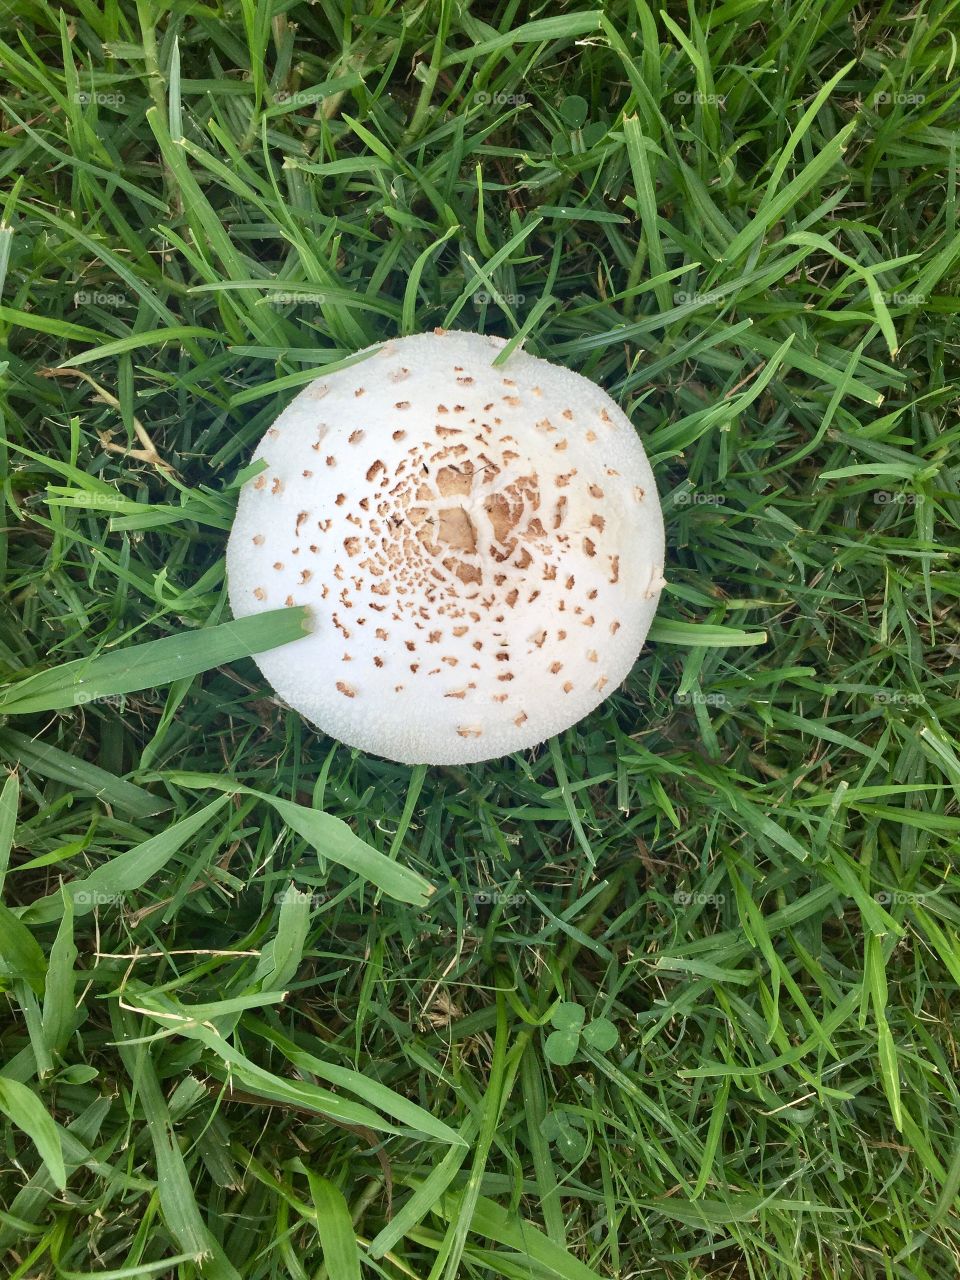 Magic mushroom
